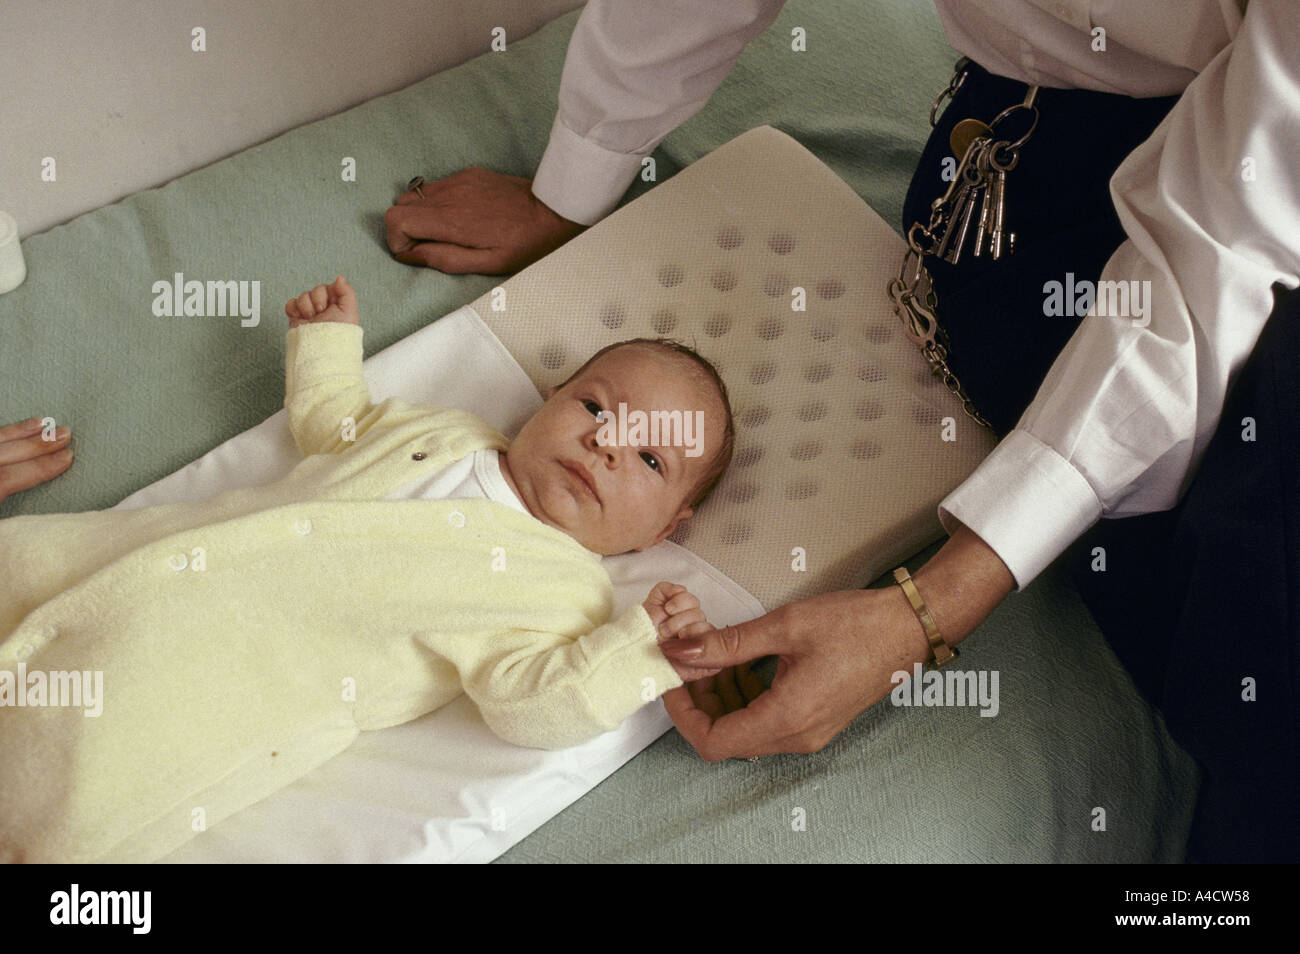 Ein Baby auf einem Bett liegt, von einem Gefängnis Offizier Uhren. Stockfoto